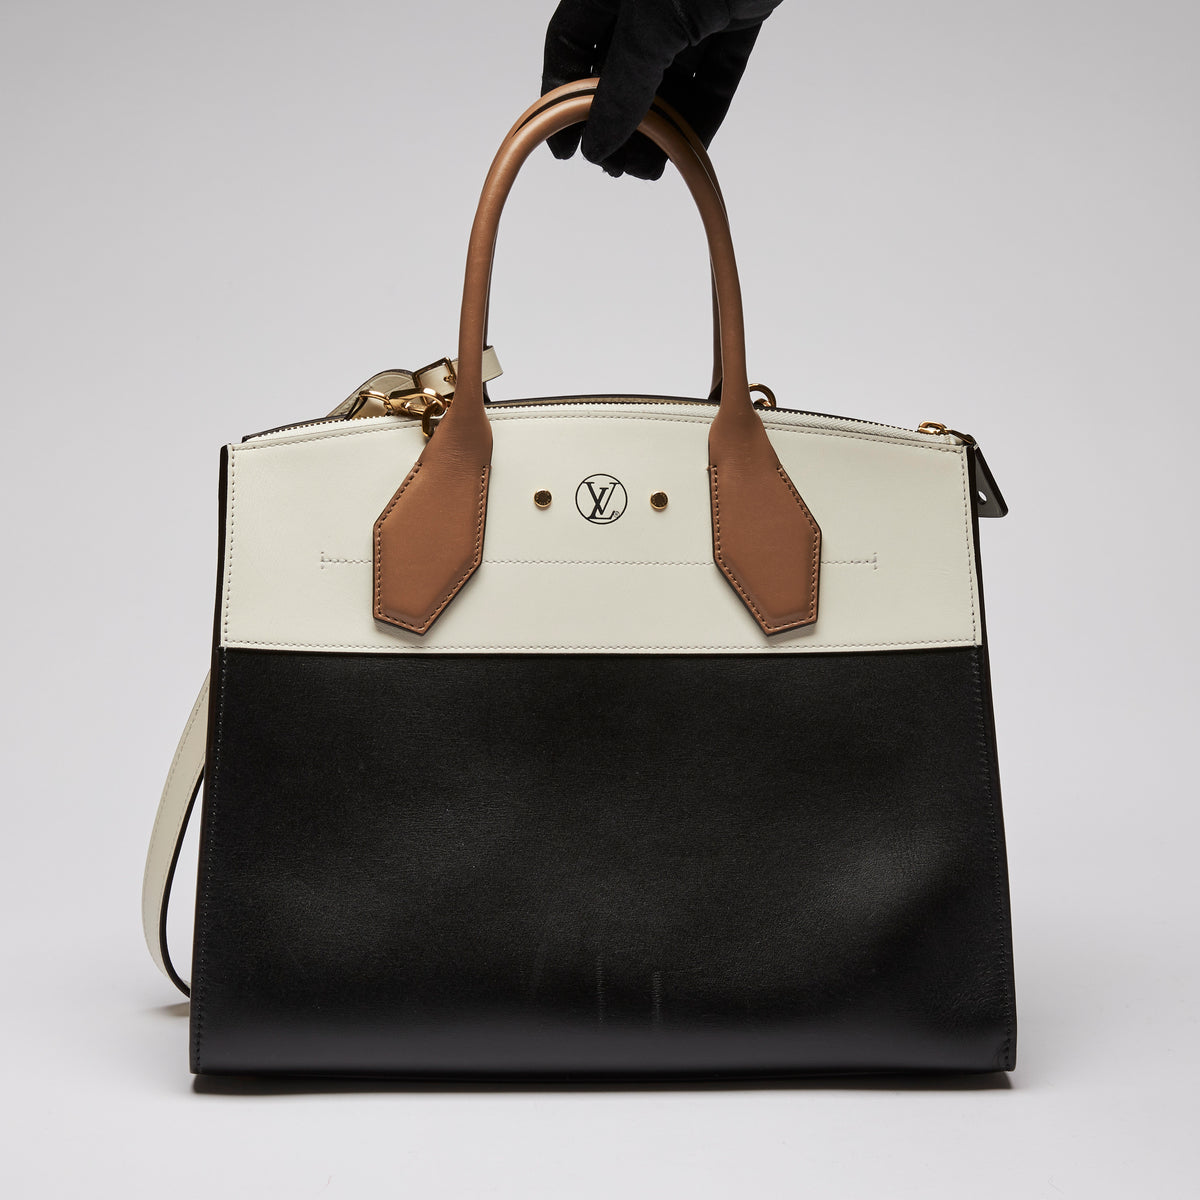 Excellent Pre-Loved Ivory/Dark Beige/Black Smooth Leather Top Handle Bag. (back)